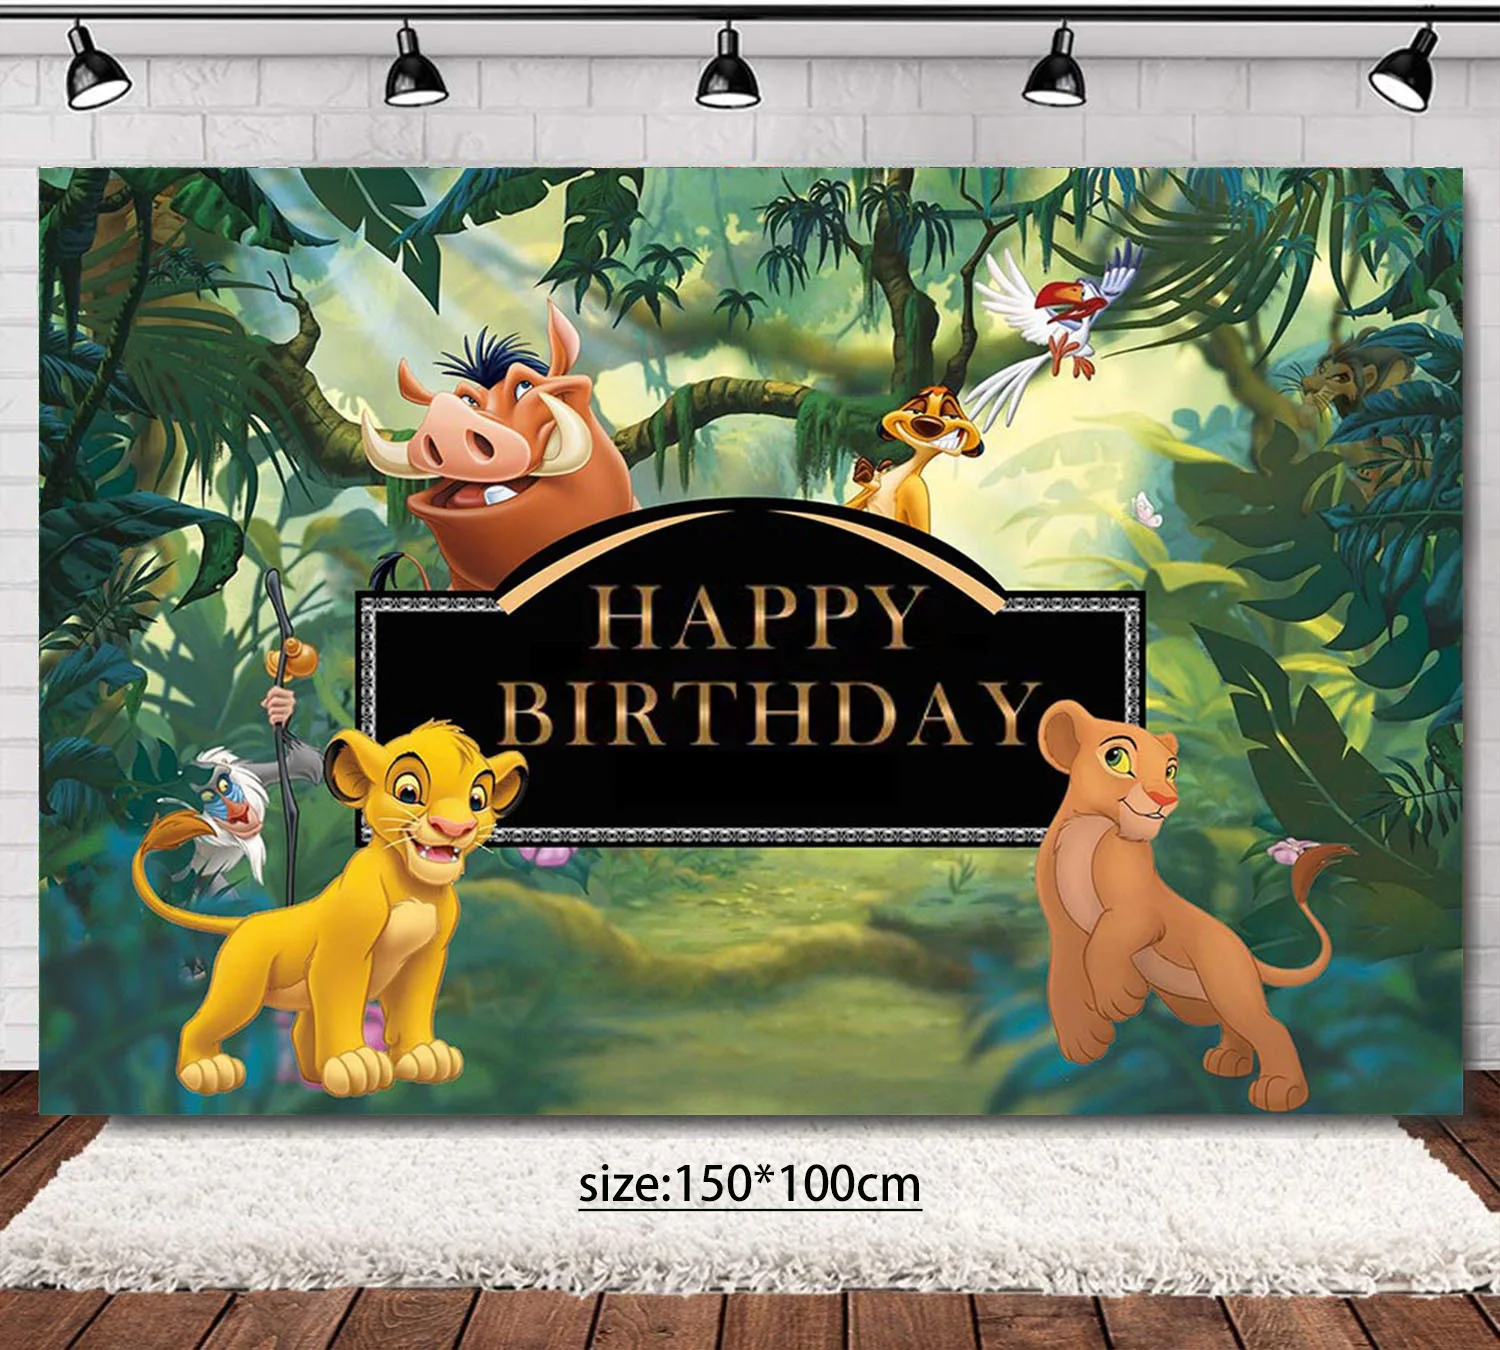 König der Löwen Simba Party Dekorationen Einweg geschirr Tasse Teller Serviette Tischdecke Kuchen Topper Banner für Kinder Party zubehör